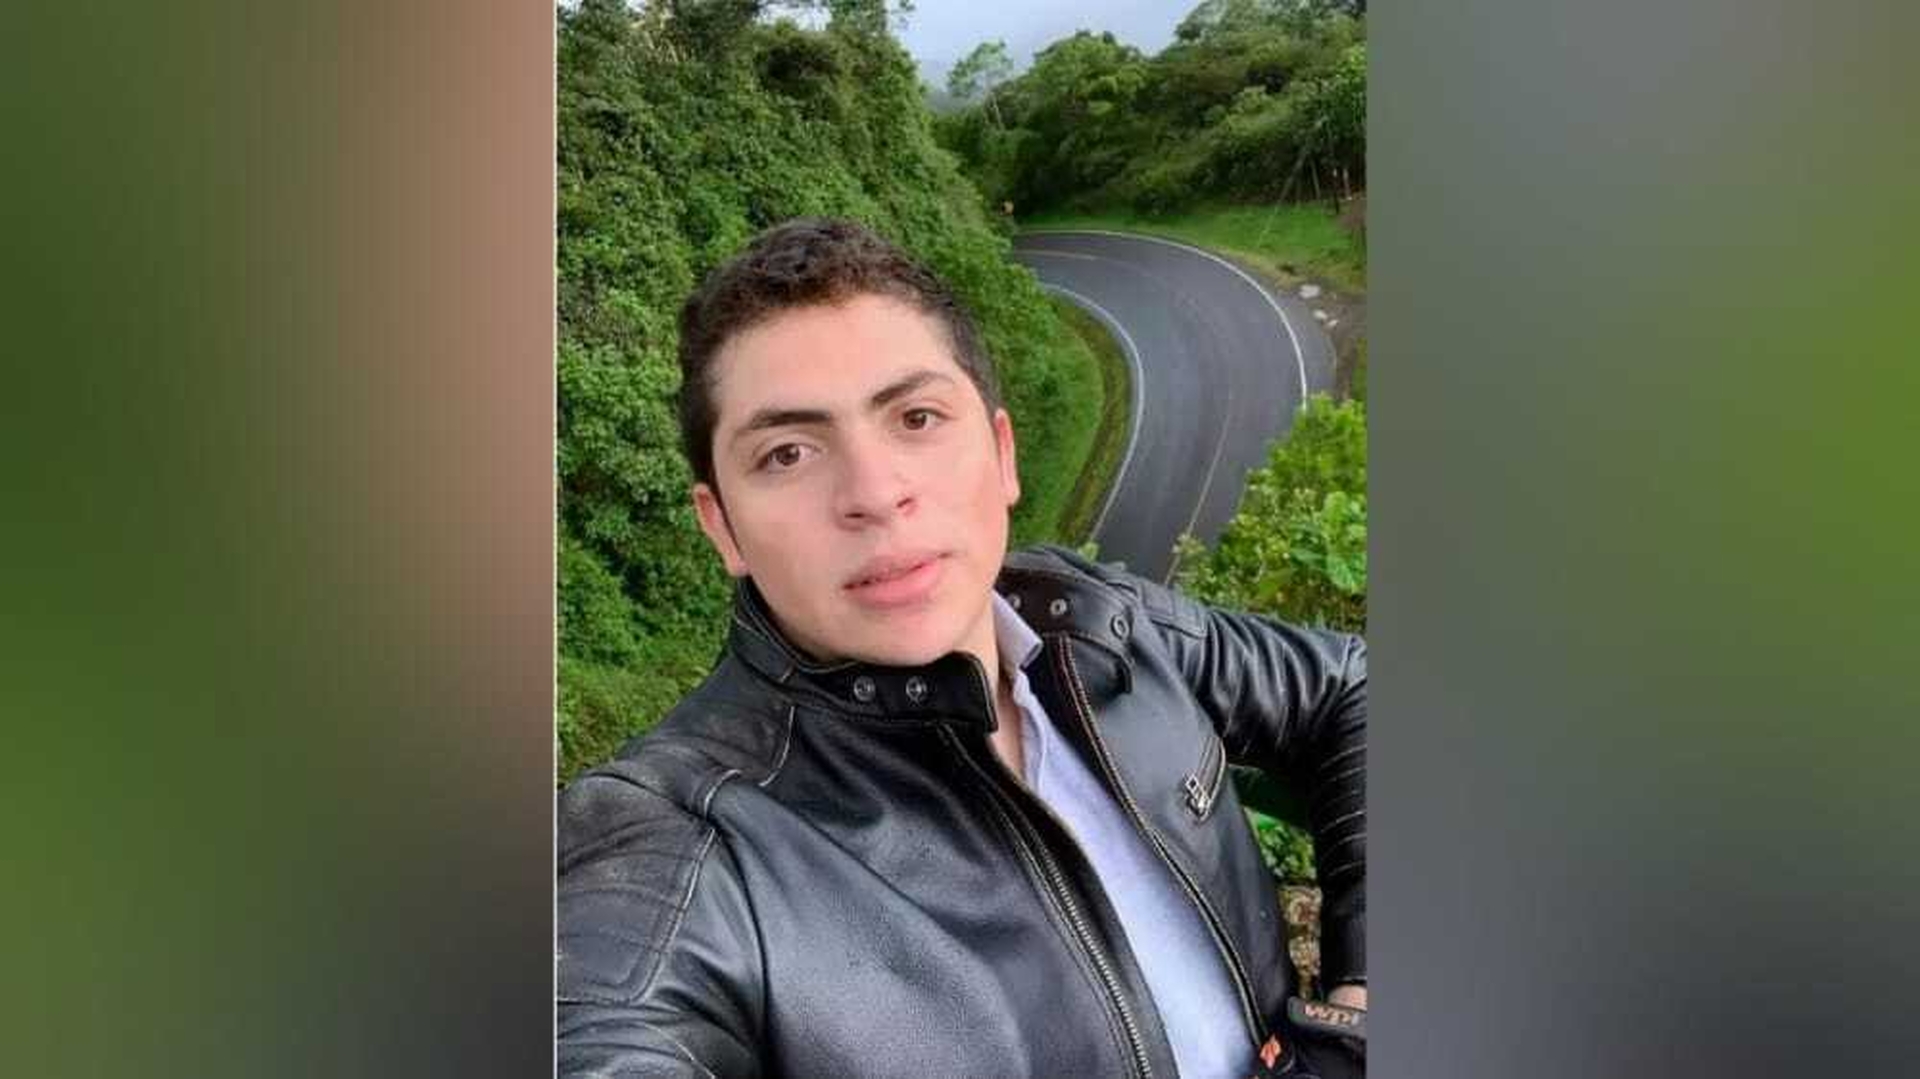 Futuro médico falleció tras chocar en moto contra otro motorizado en la ciudad de León